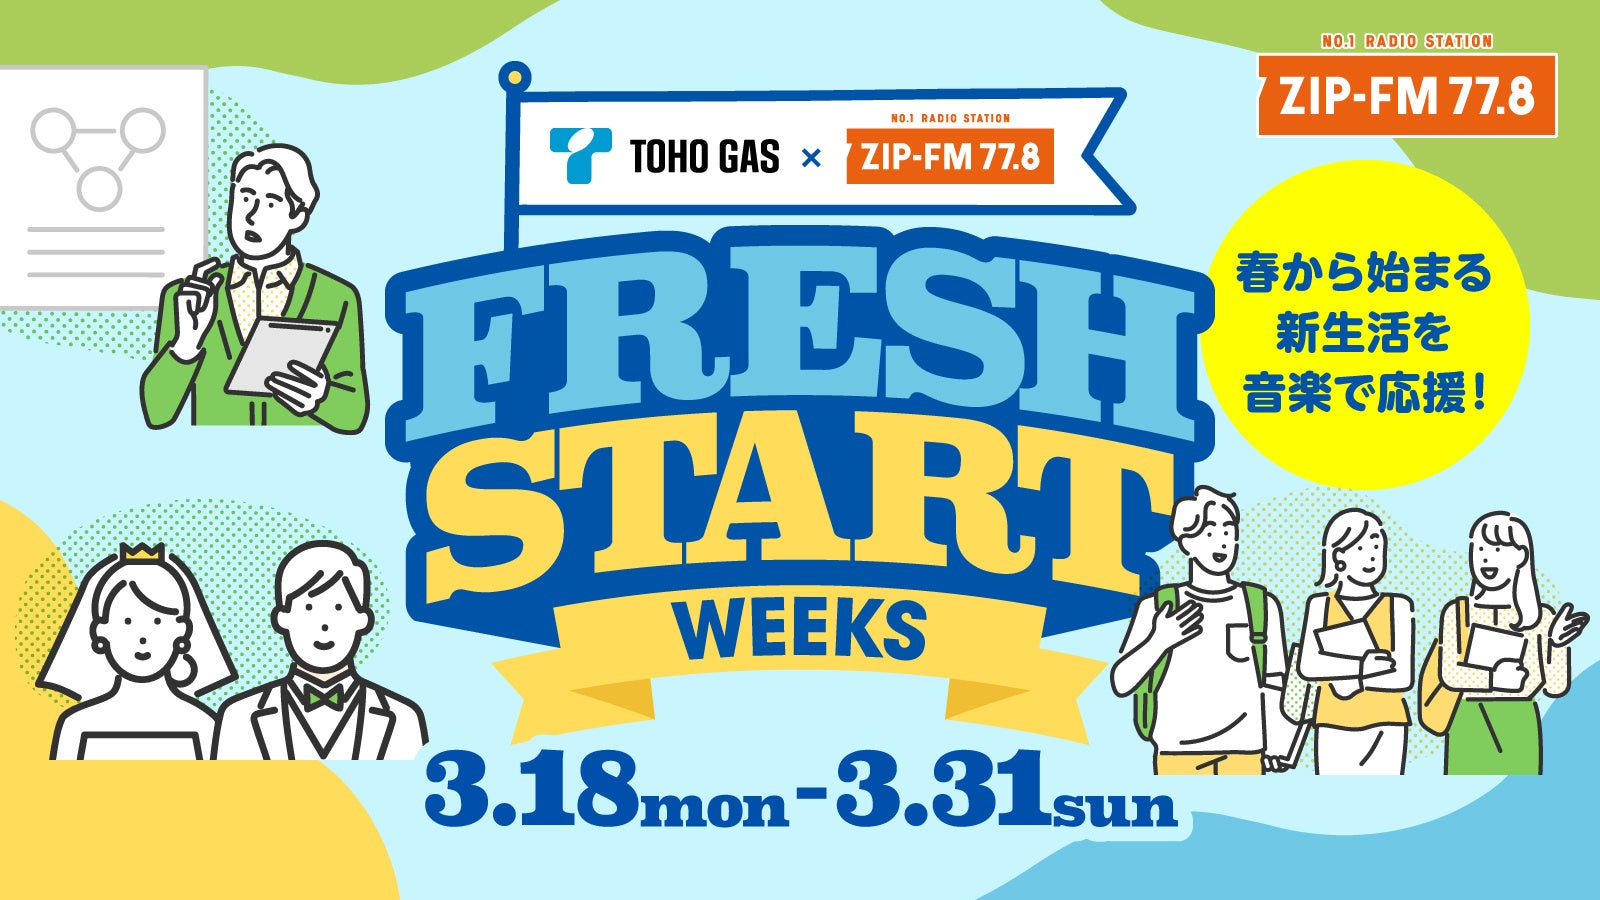 東邦ガスとZIP-FMがコラボレーション!!新生活応援企画『TOHO GAS & ZIP-FM FRESH START WEEKS』